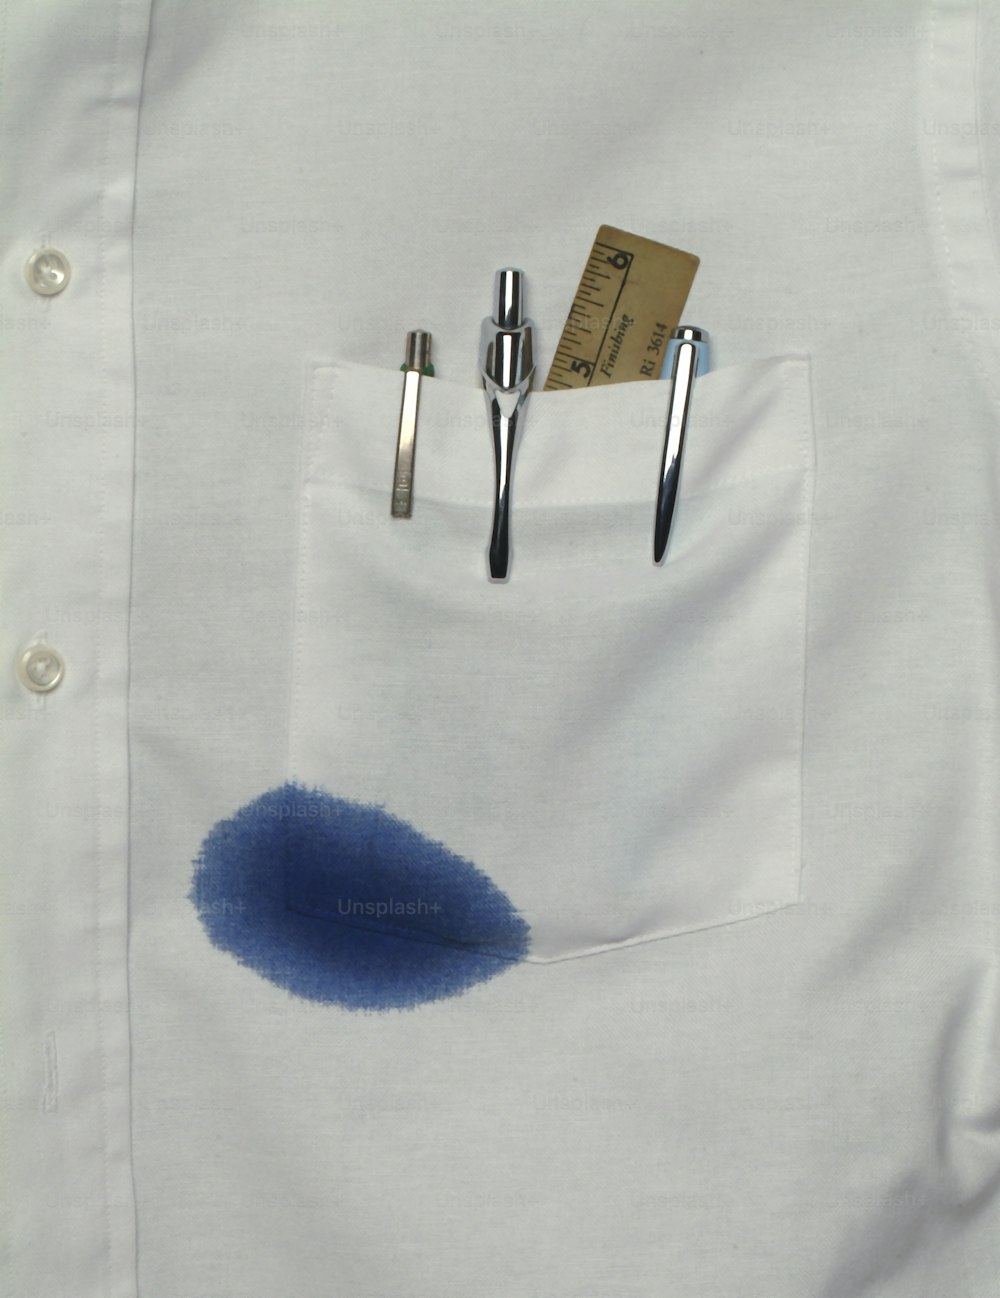 Vista em close-up de um bolso de camisa que contém uma régua e várias canetas, uma das quais vaza tinta azul, Califórnia, década de 1970 (Photo by Tom Kelley/Getty Images)